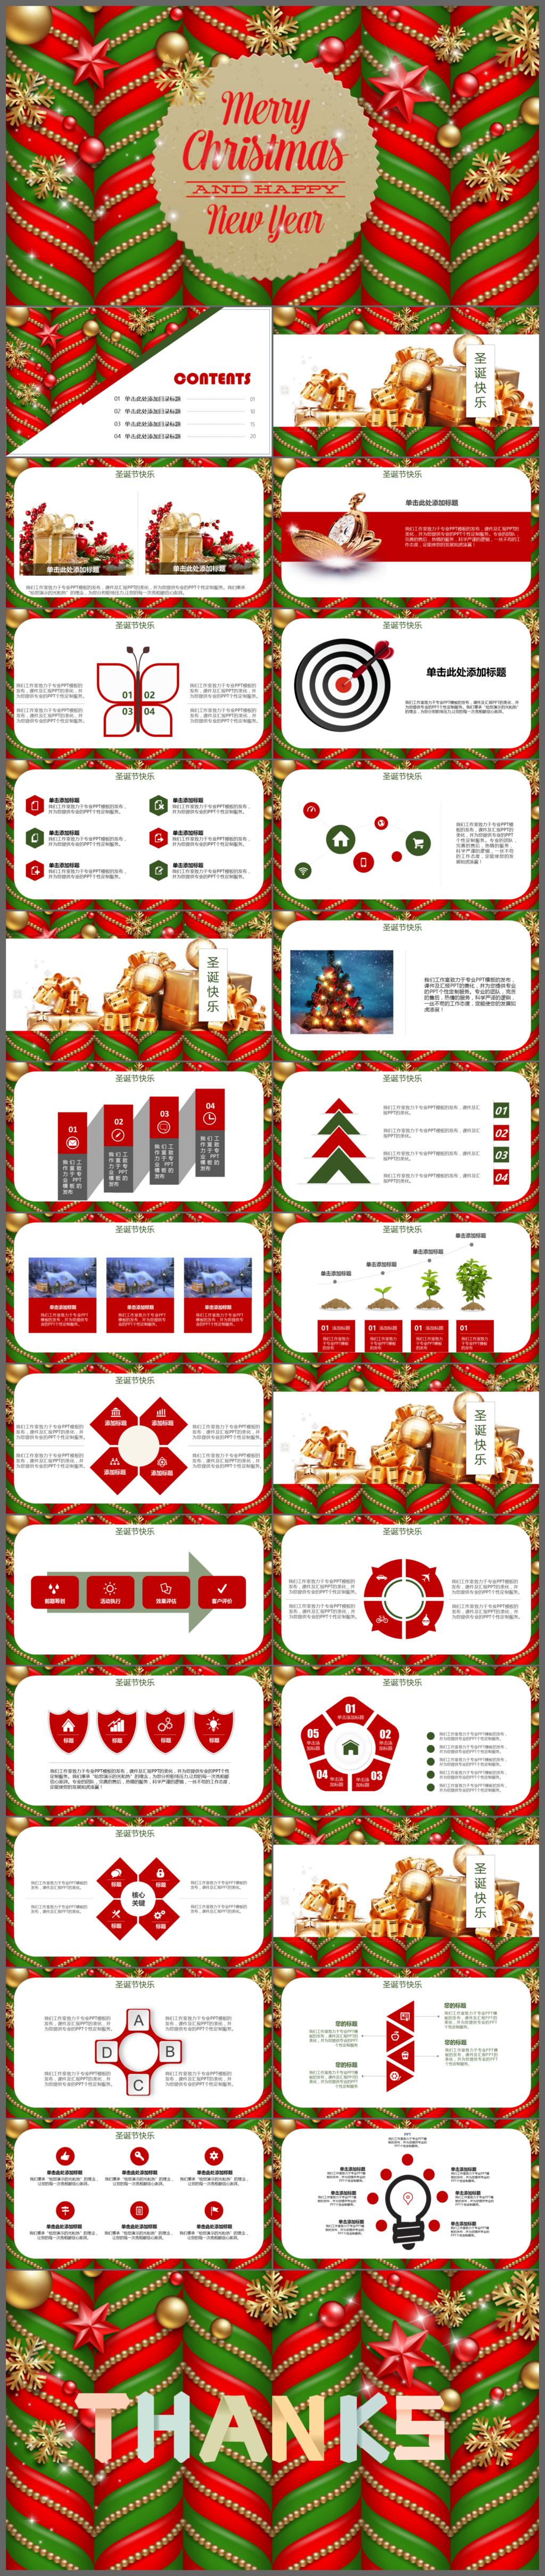 圣诞主题可爱风活动策划报告圣诞节PPT模板
